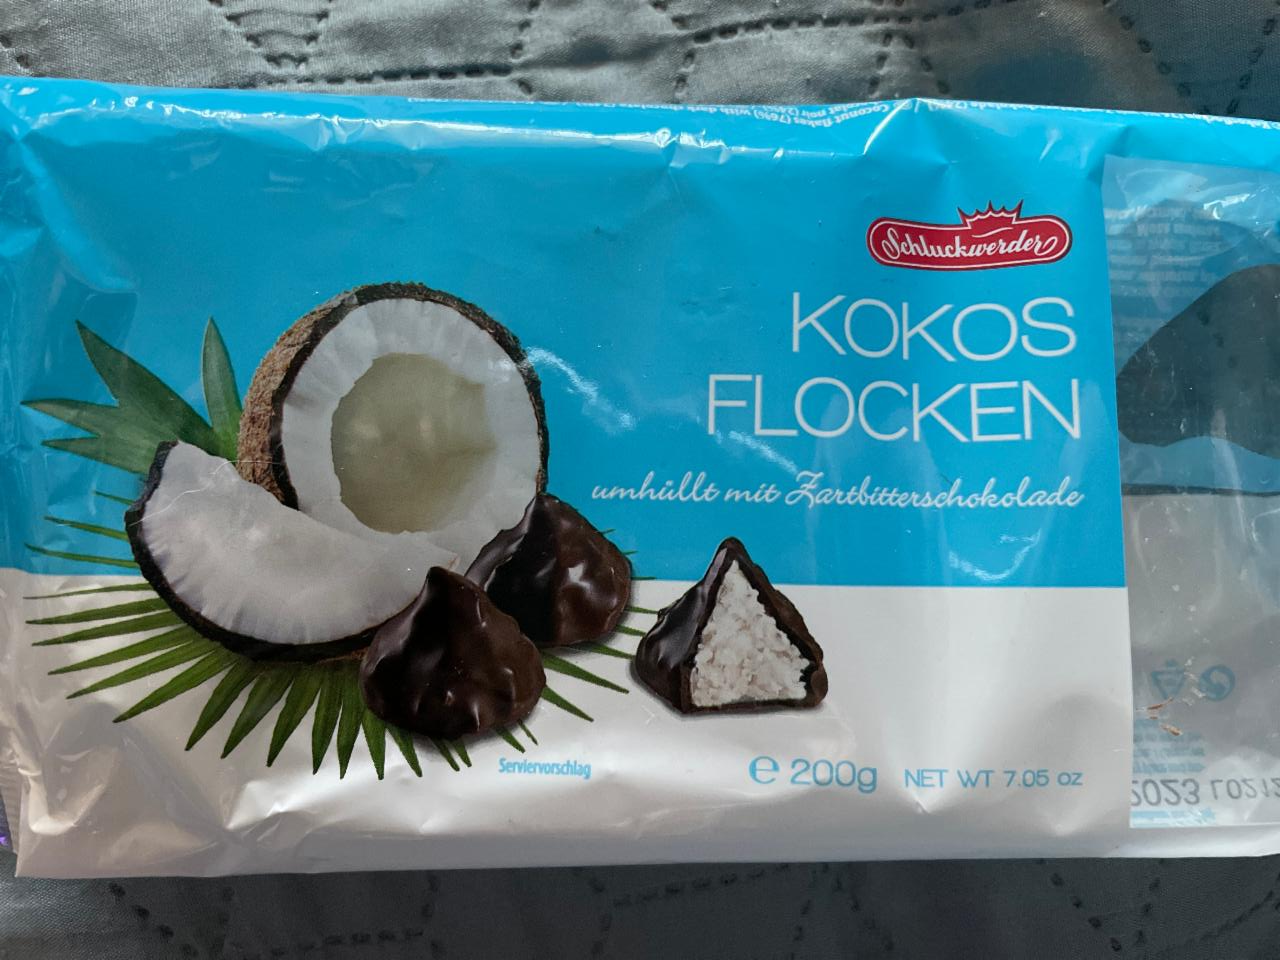 Фото - Цукерки з кокосовою начинкою в чорному шоколаді Schluckwerder